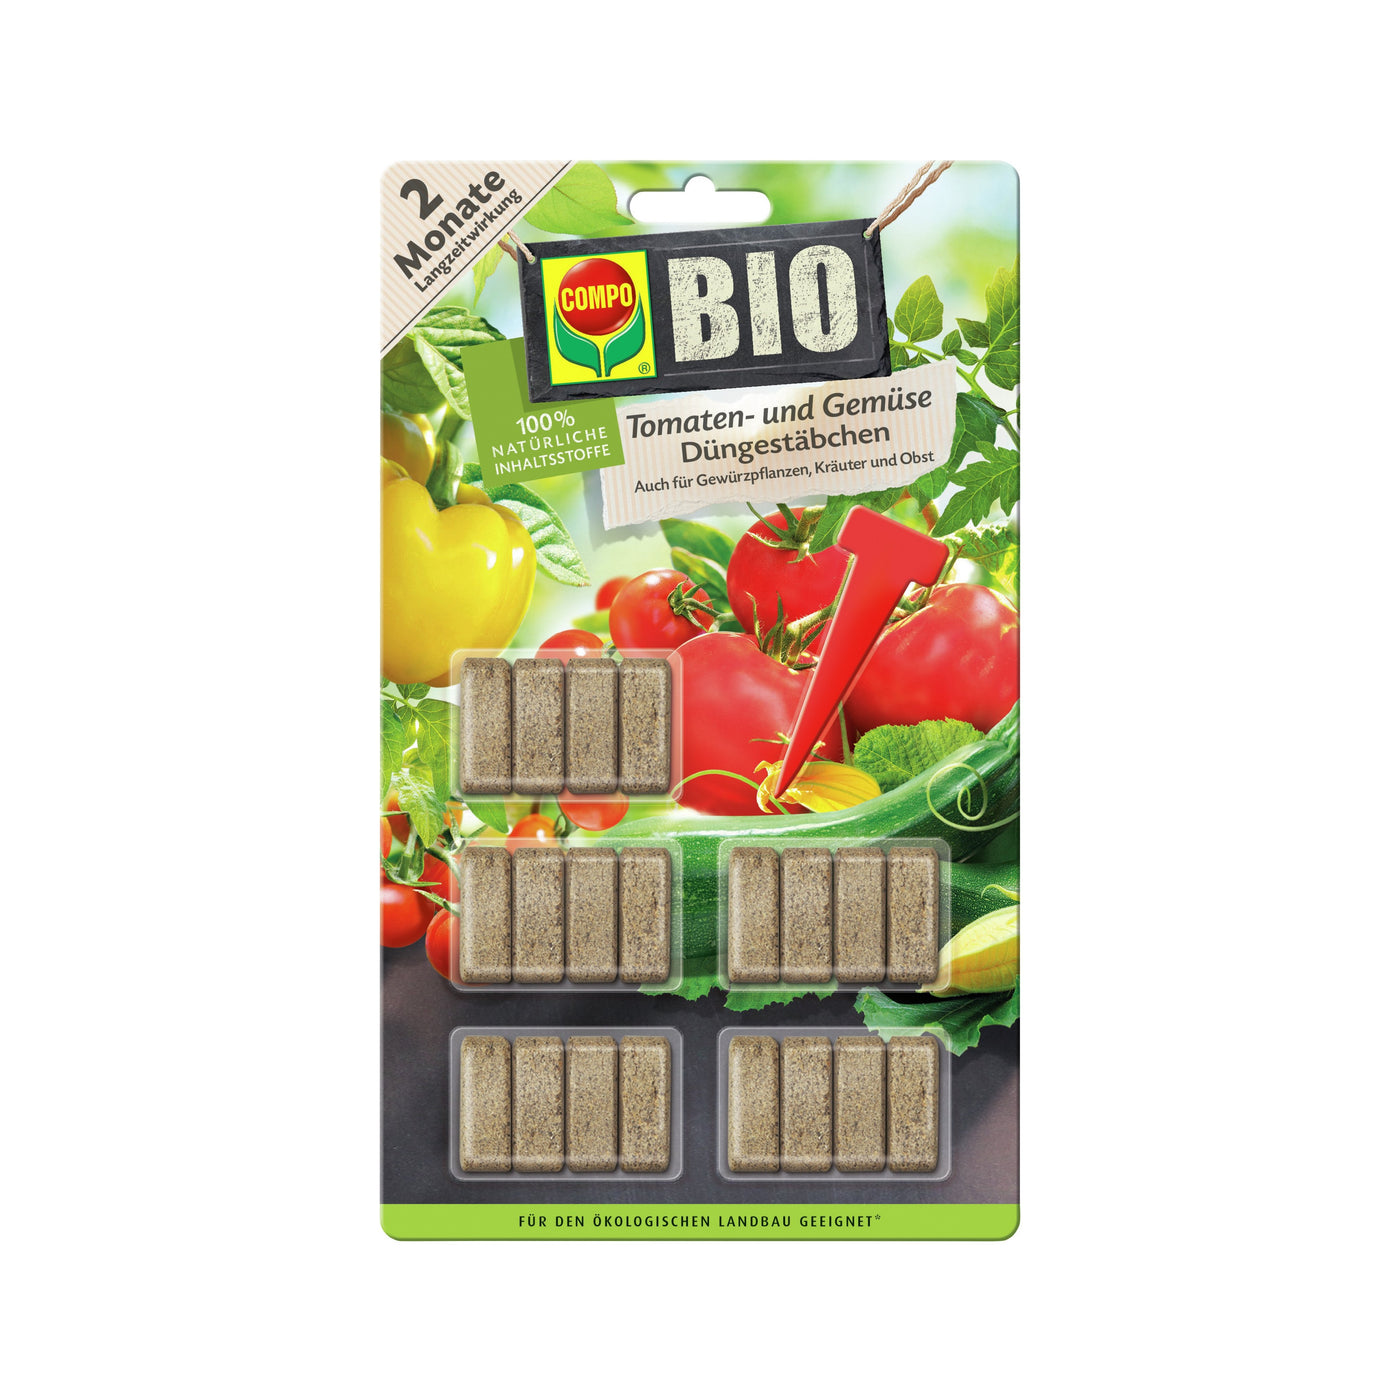 Compo Bio Tomaten- und Gemüse Düngestäbchen (20 Stück)